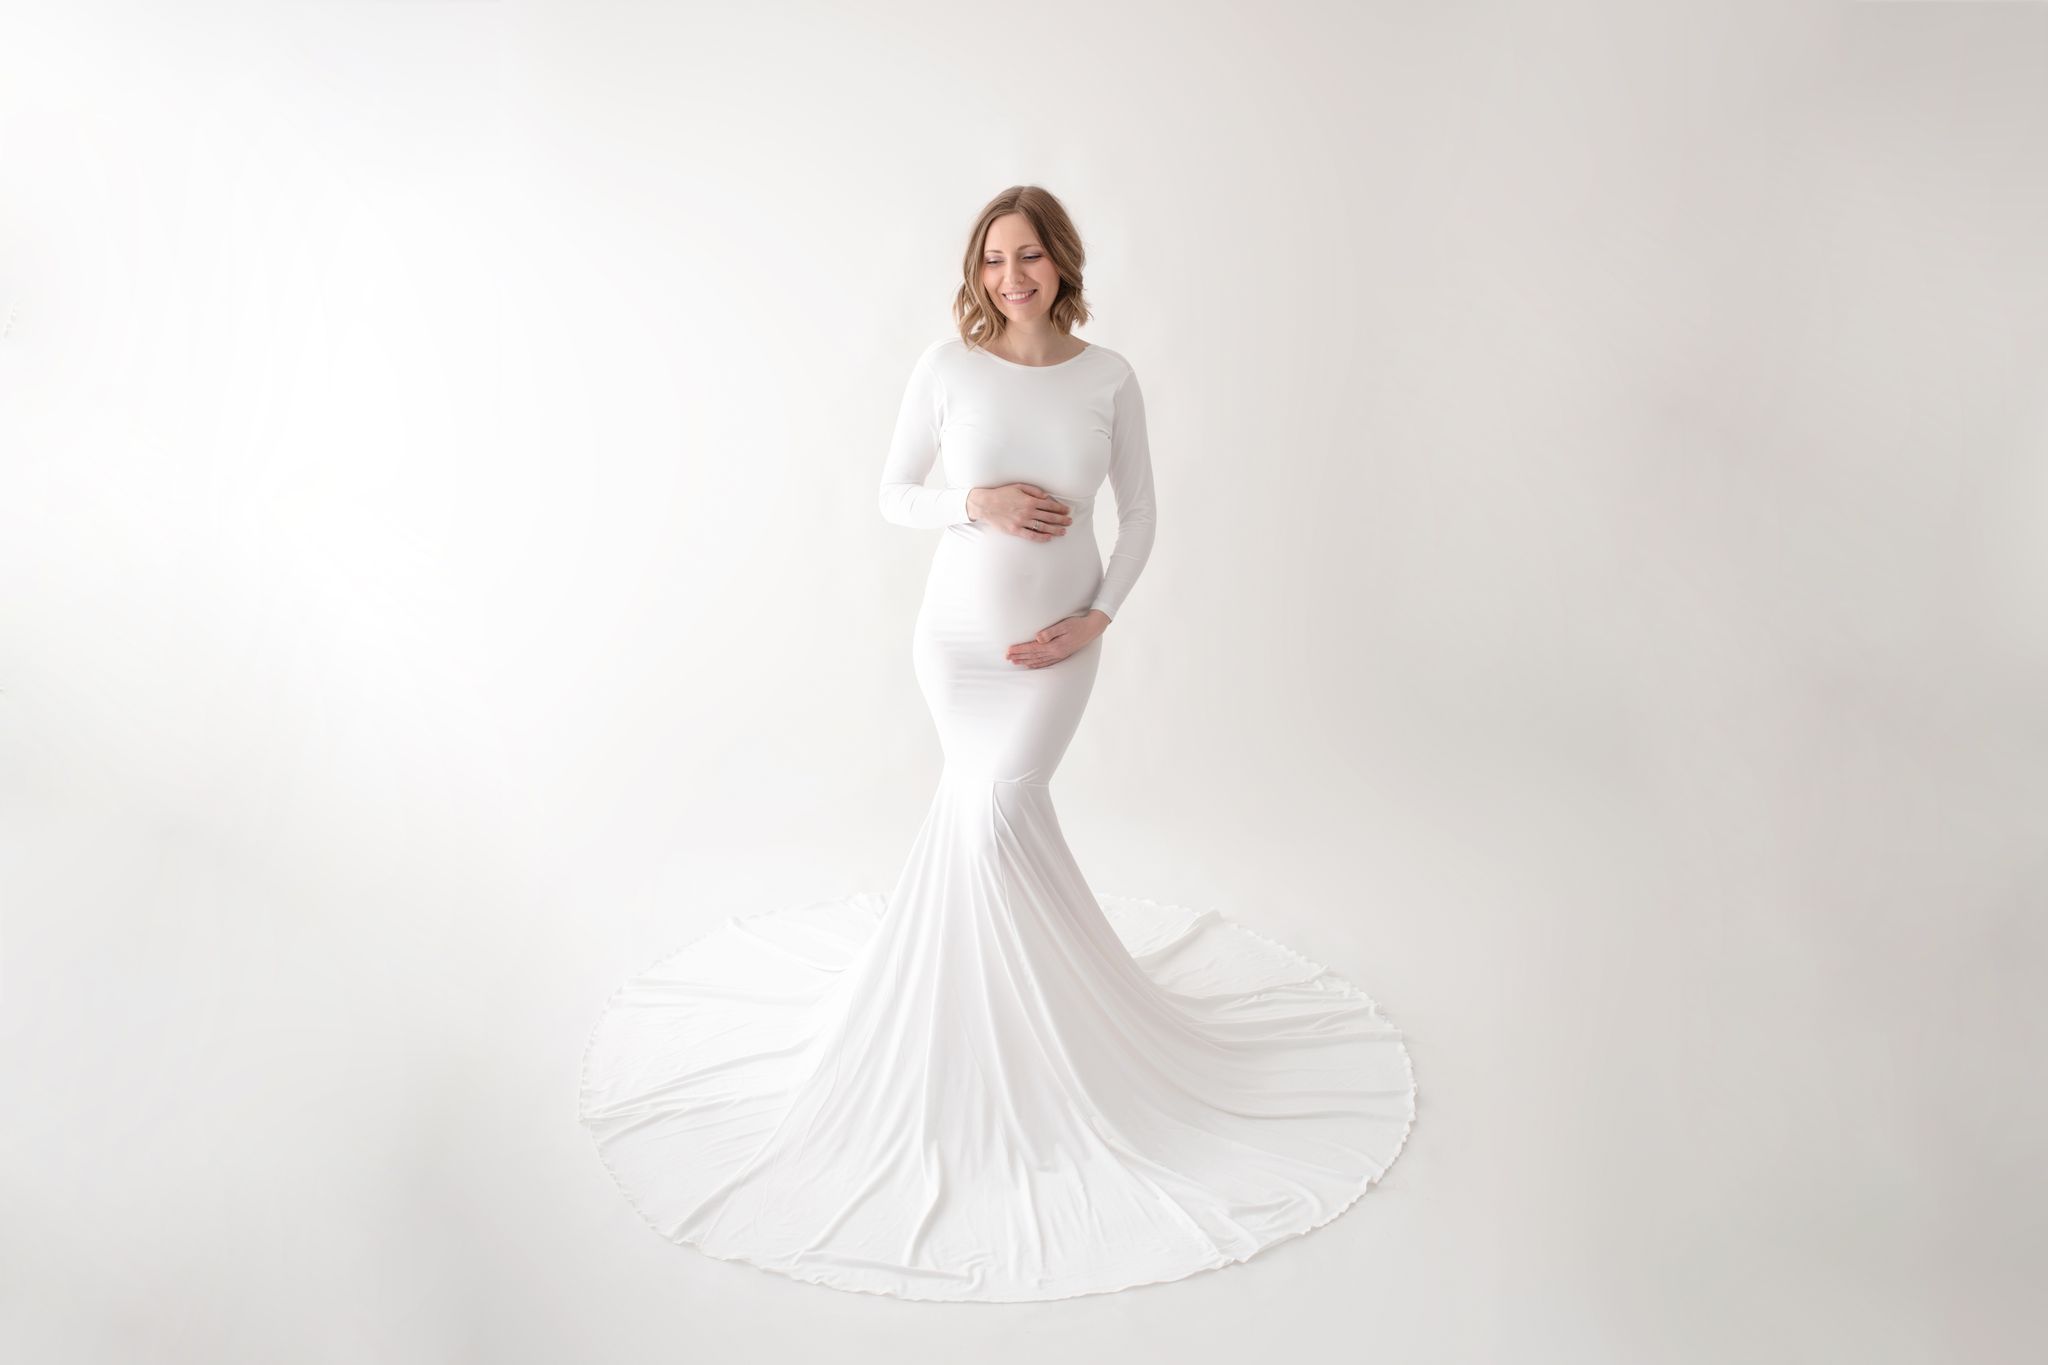 eine wunderhübsche Schwangere in einem weißen Kleid mit langer Schleppe bildet das Cover der Babybauchgalerie von Zisch-Ortner